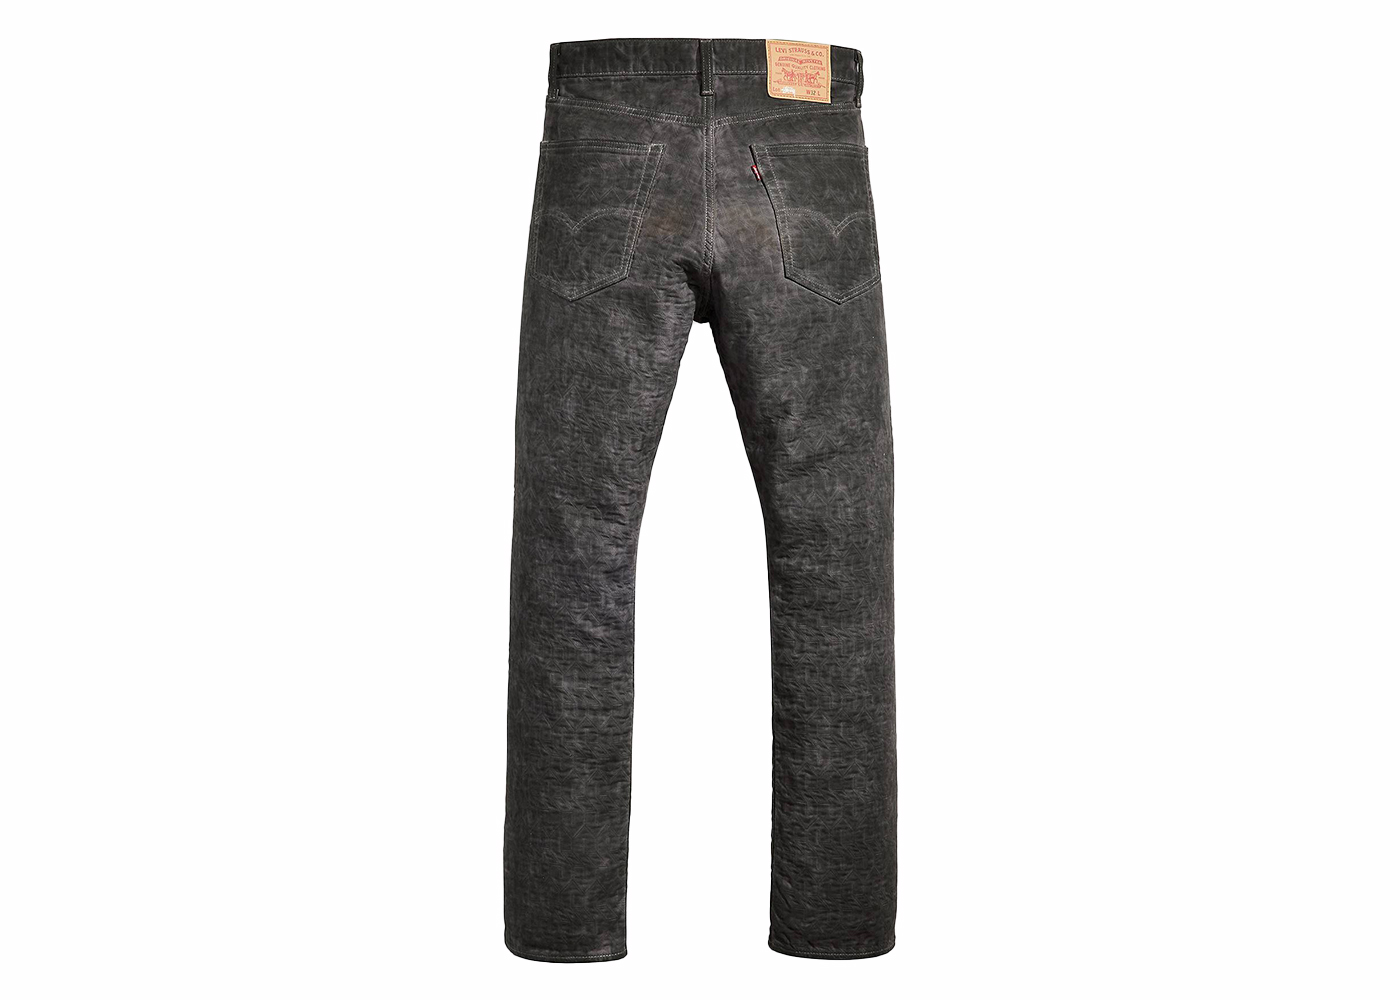 10,500円Stussy xLevi's Dyed Jacquard Jeans Brown